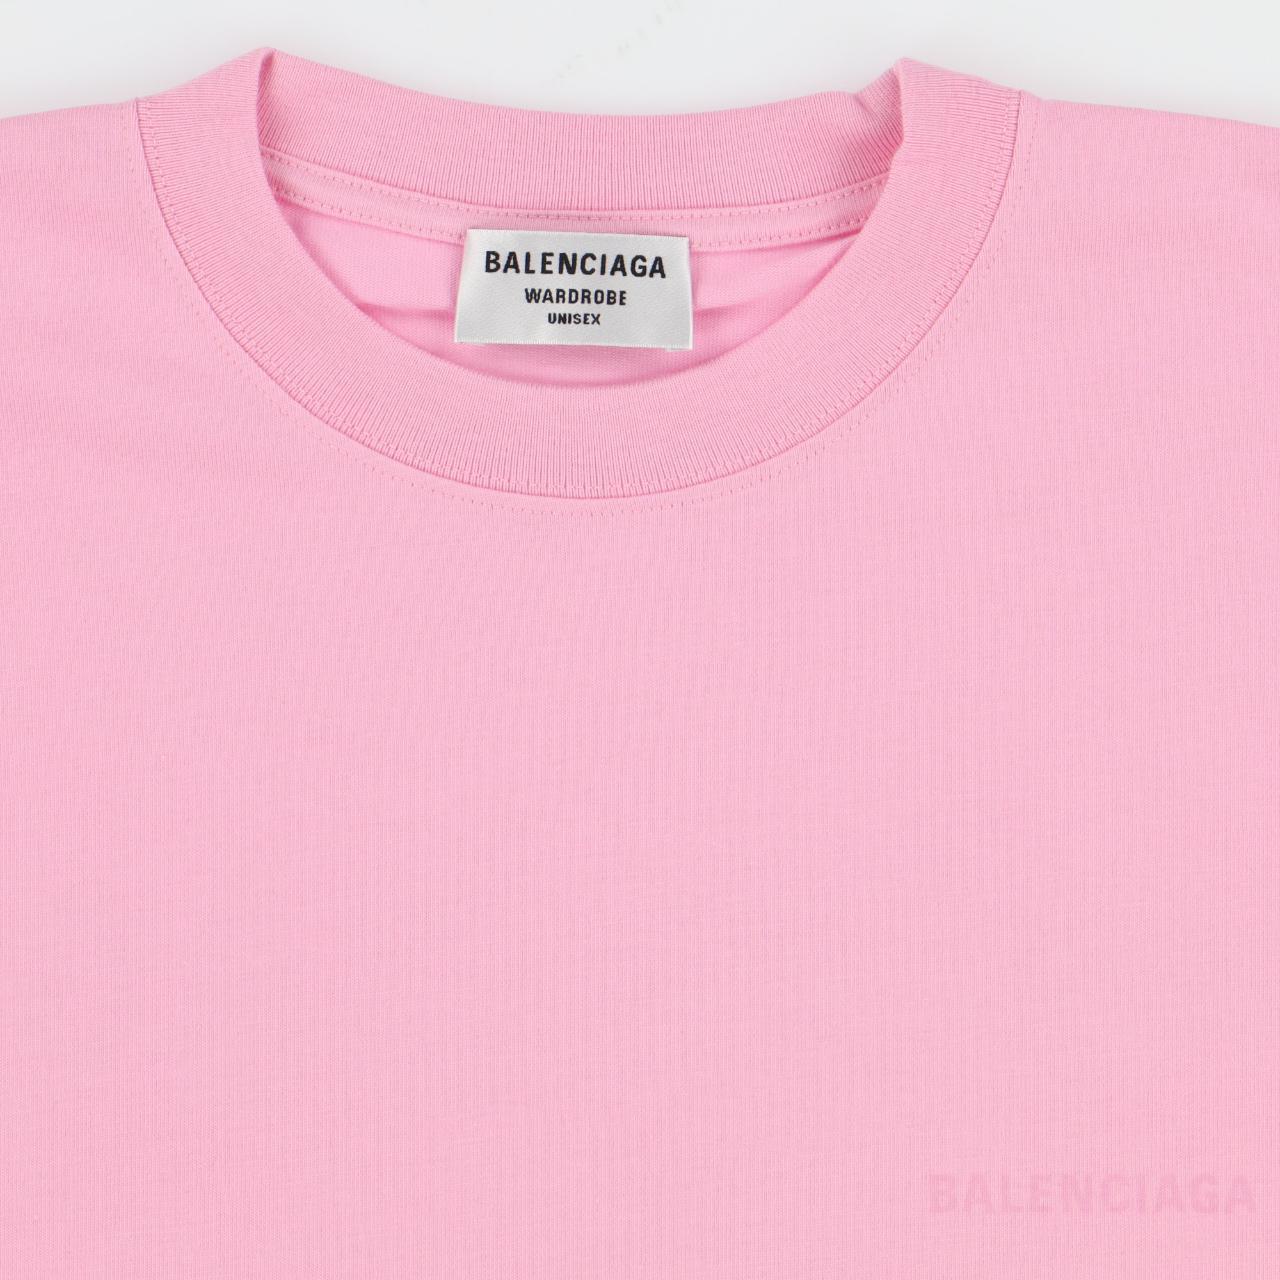 Product Image 3 - Balenciaga Pink Logo Print T-Shirt

-Size